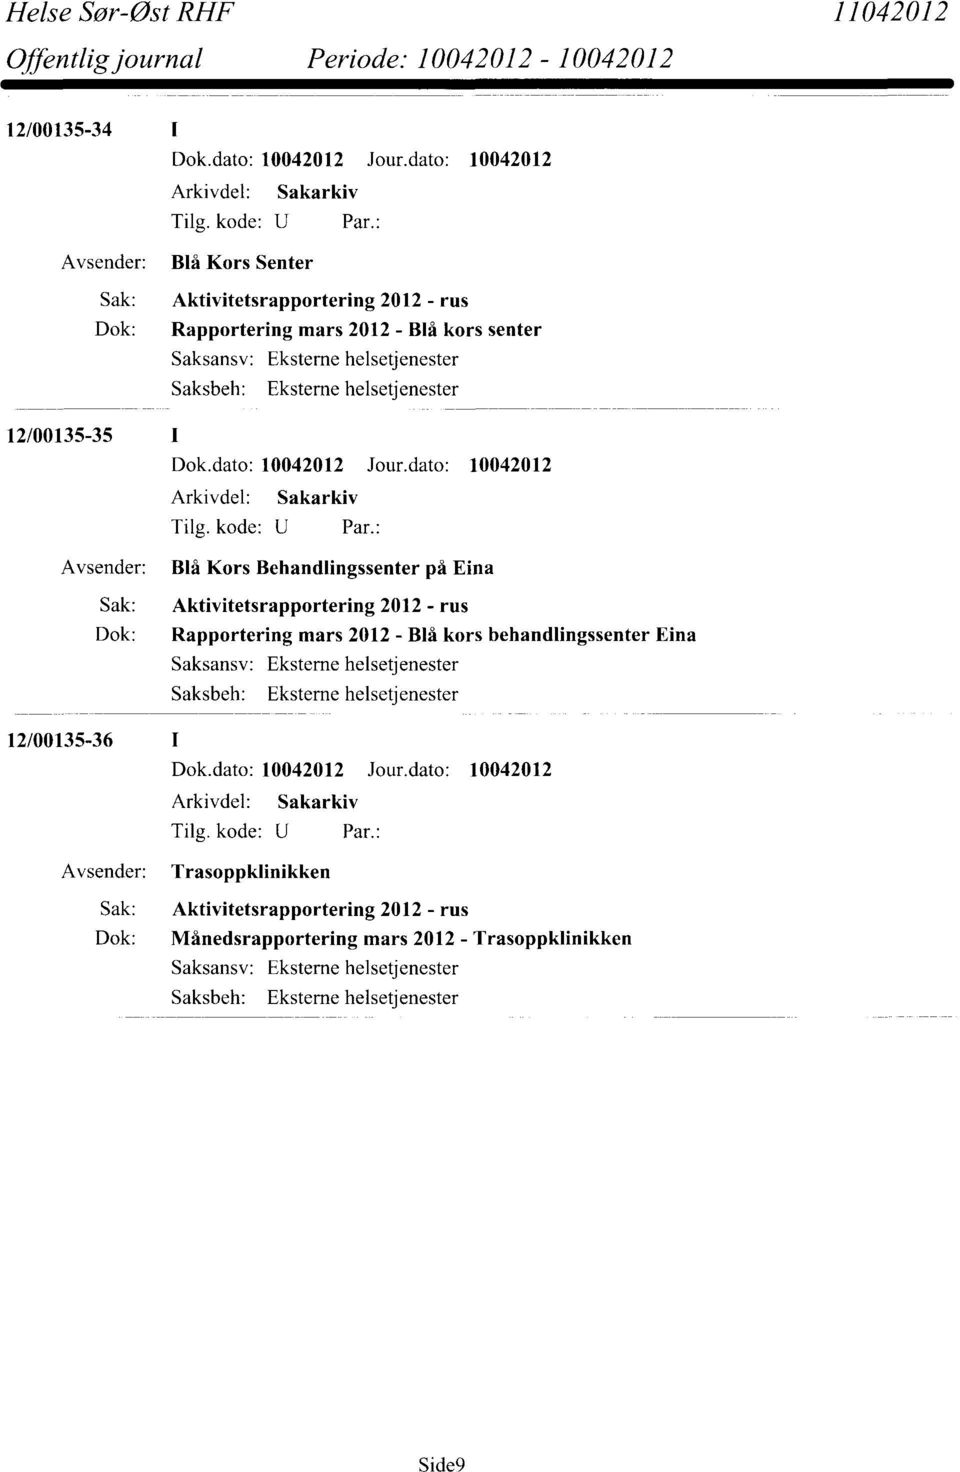 Sak: Aktivitetsrapportering 2012 - rus Dok: Rapportering mars 2012 - Blå kors behandlingssenter Eina 12/00135-36